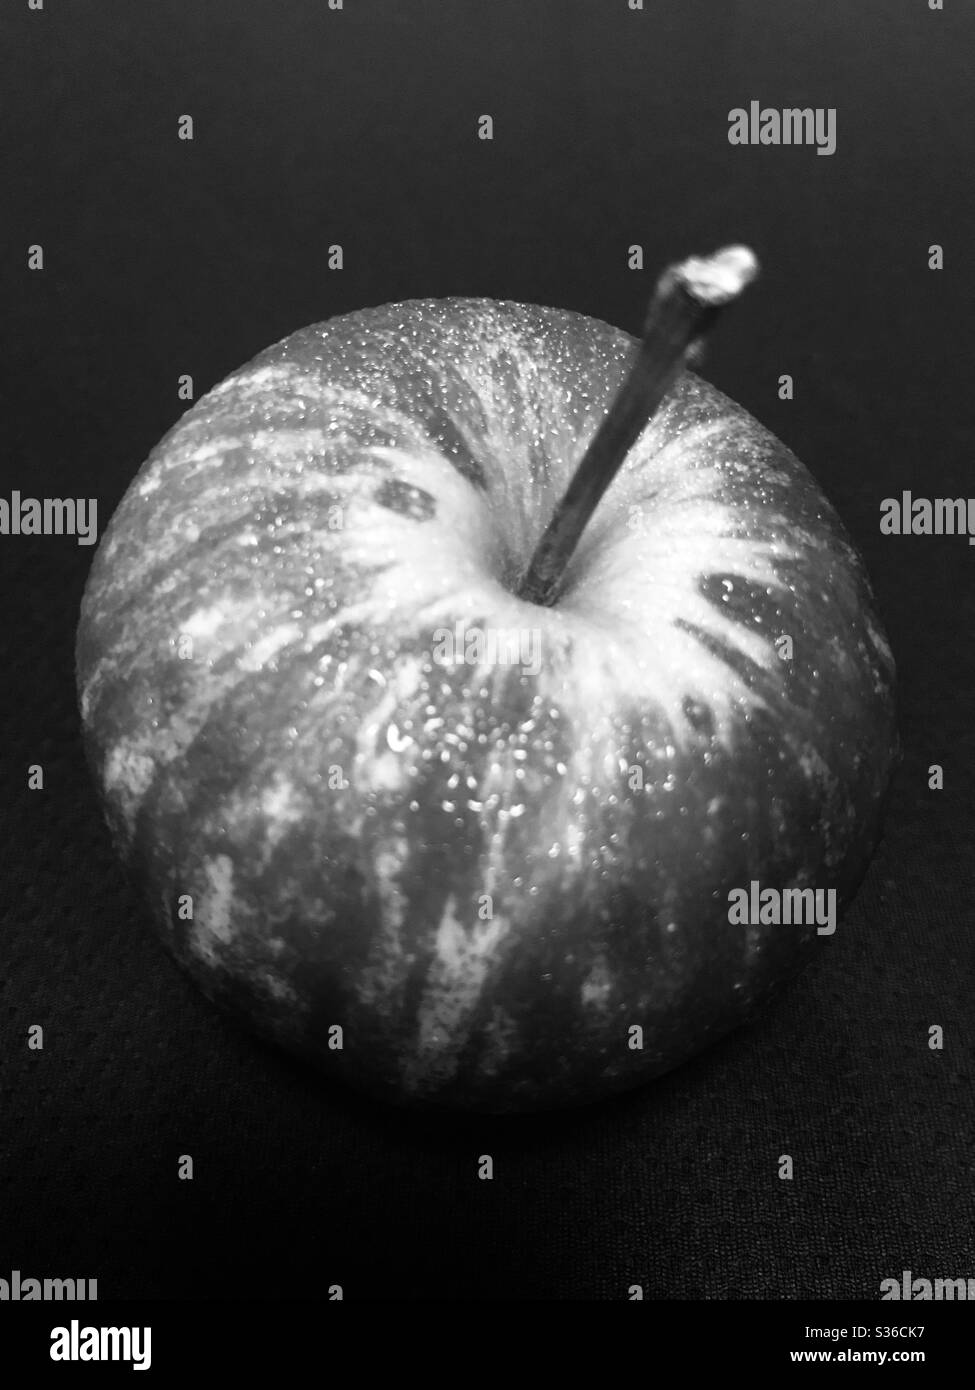 Il suggestivo aspetto bianco e nero di una mela rossa con gocce d'acqua dopo essere stata tenuta fuori dal frigorifero prima del consumo "una mela al giorno tiene lontano il medico" Foto Stock